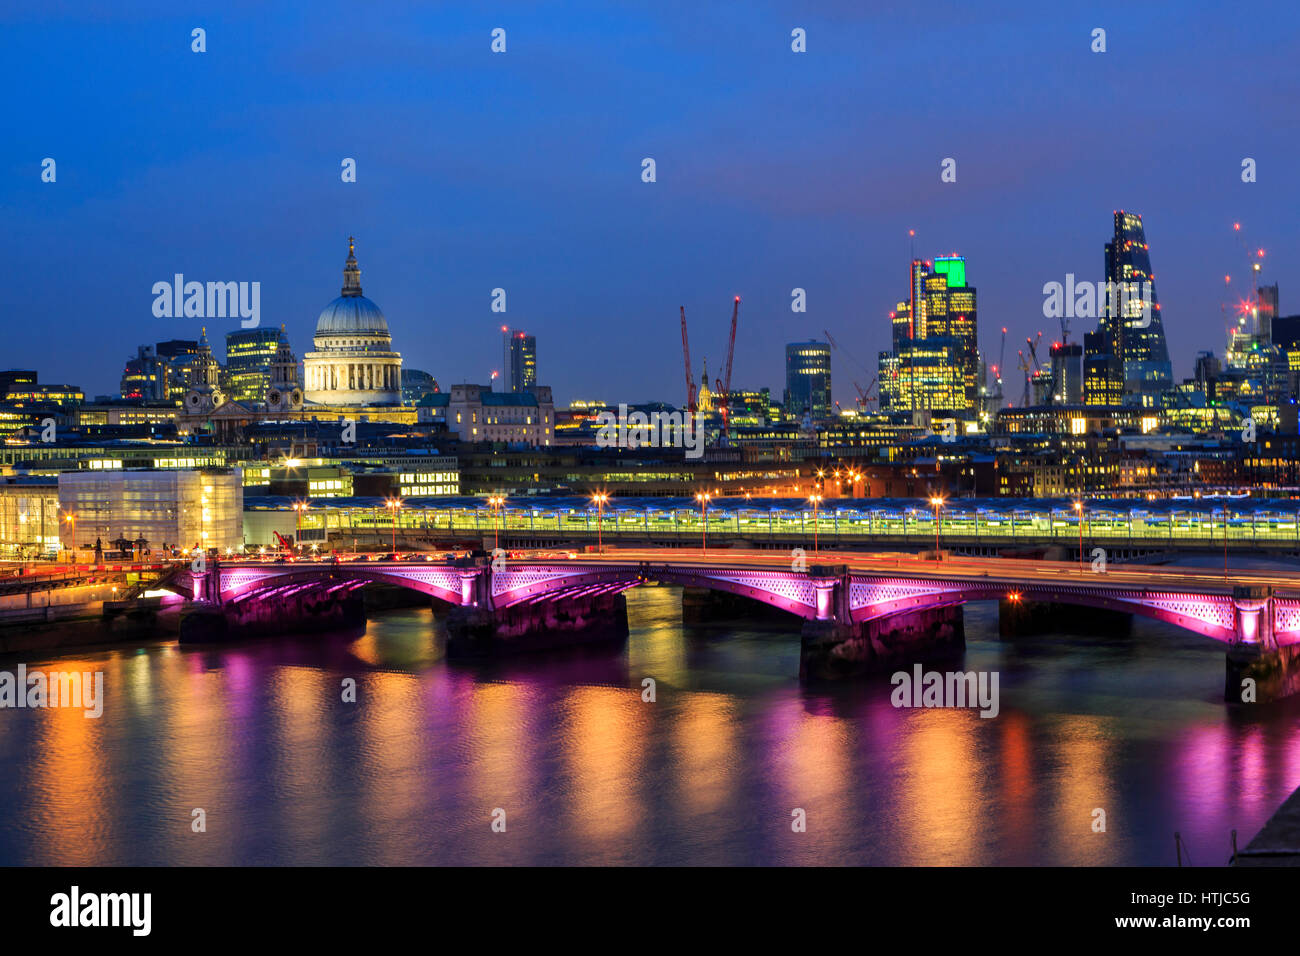 Skyline von London mit St. Paul's Cathedra, Themse Reflexionen und der Londoner City Dämmerung Nacht Panorama, London, England, Großbritannien Stockfoto